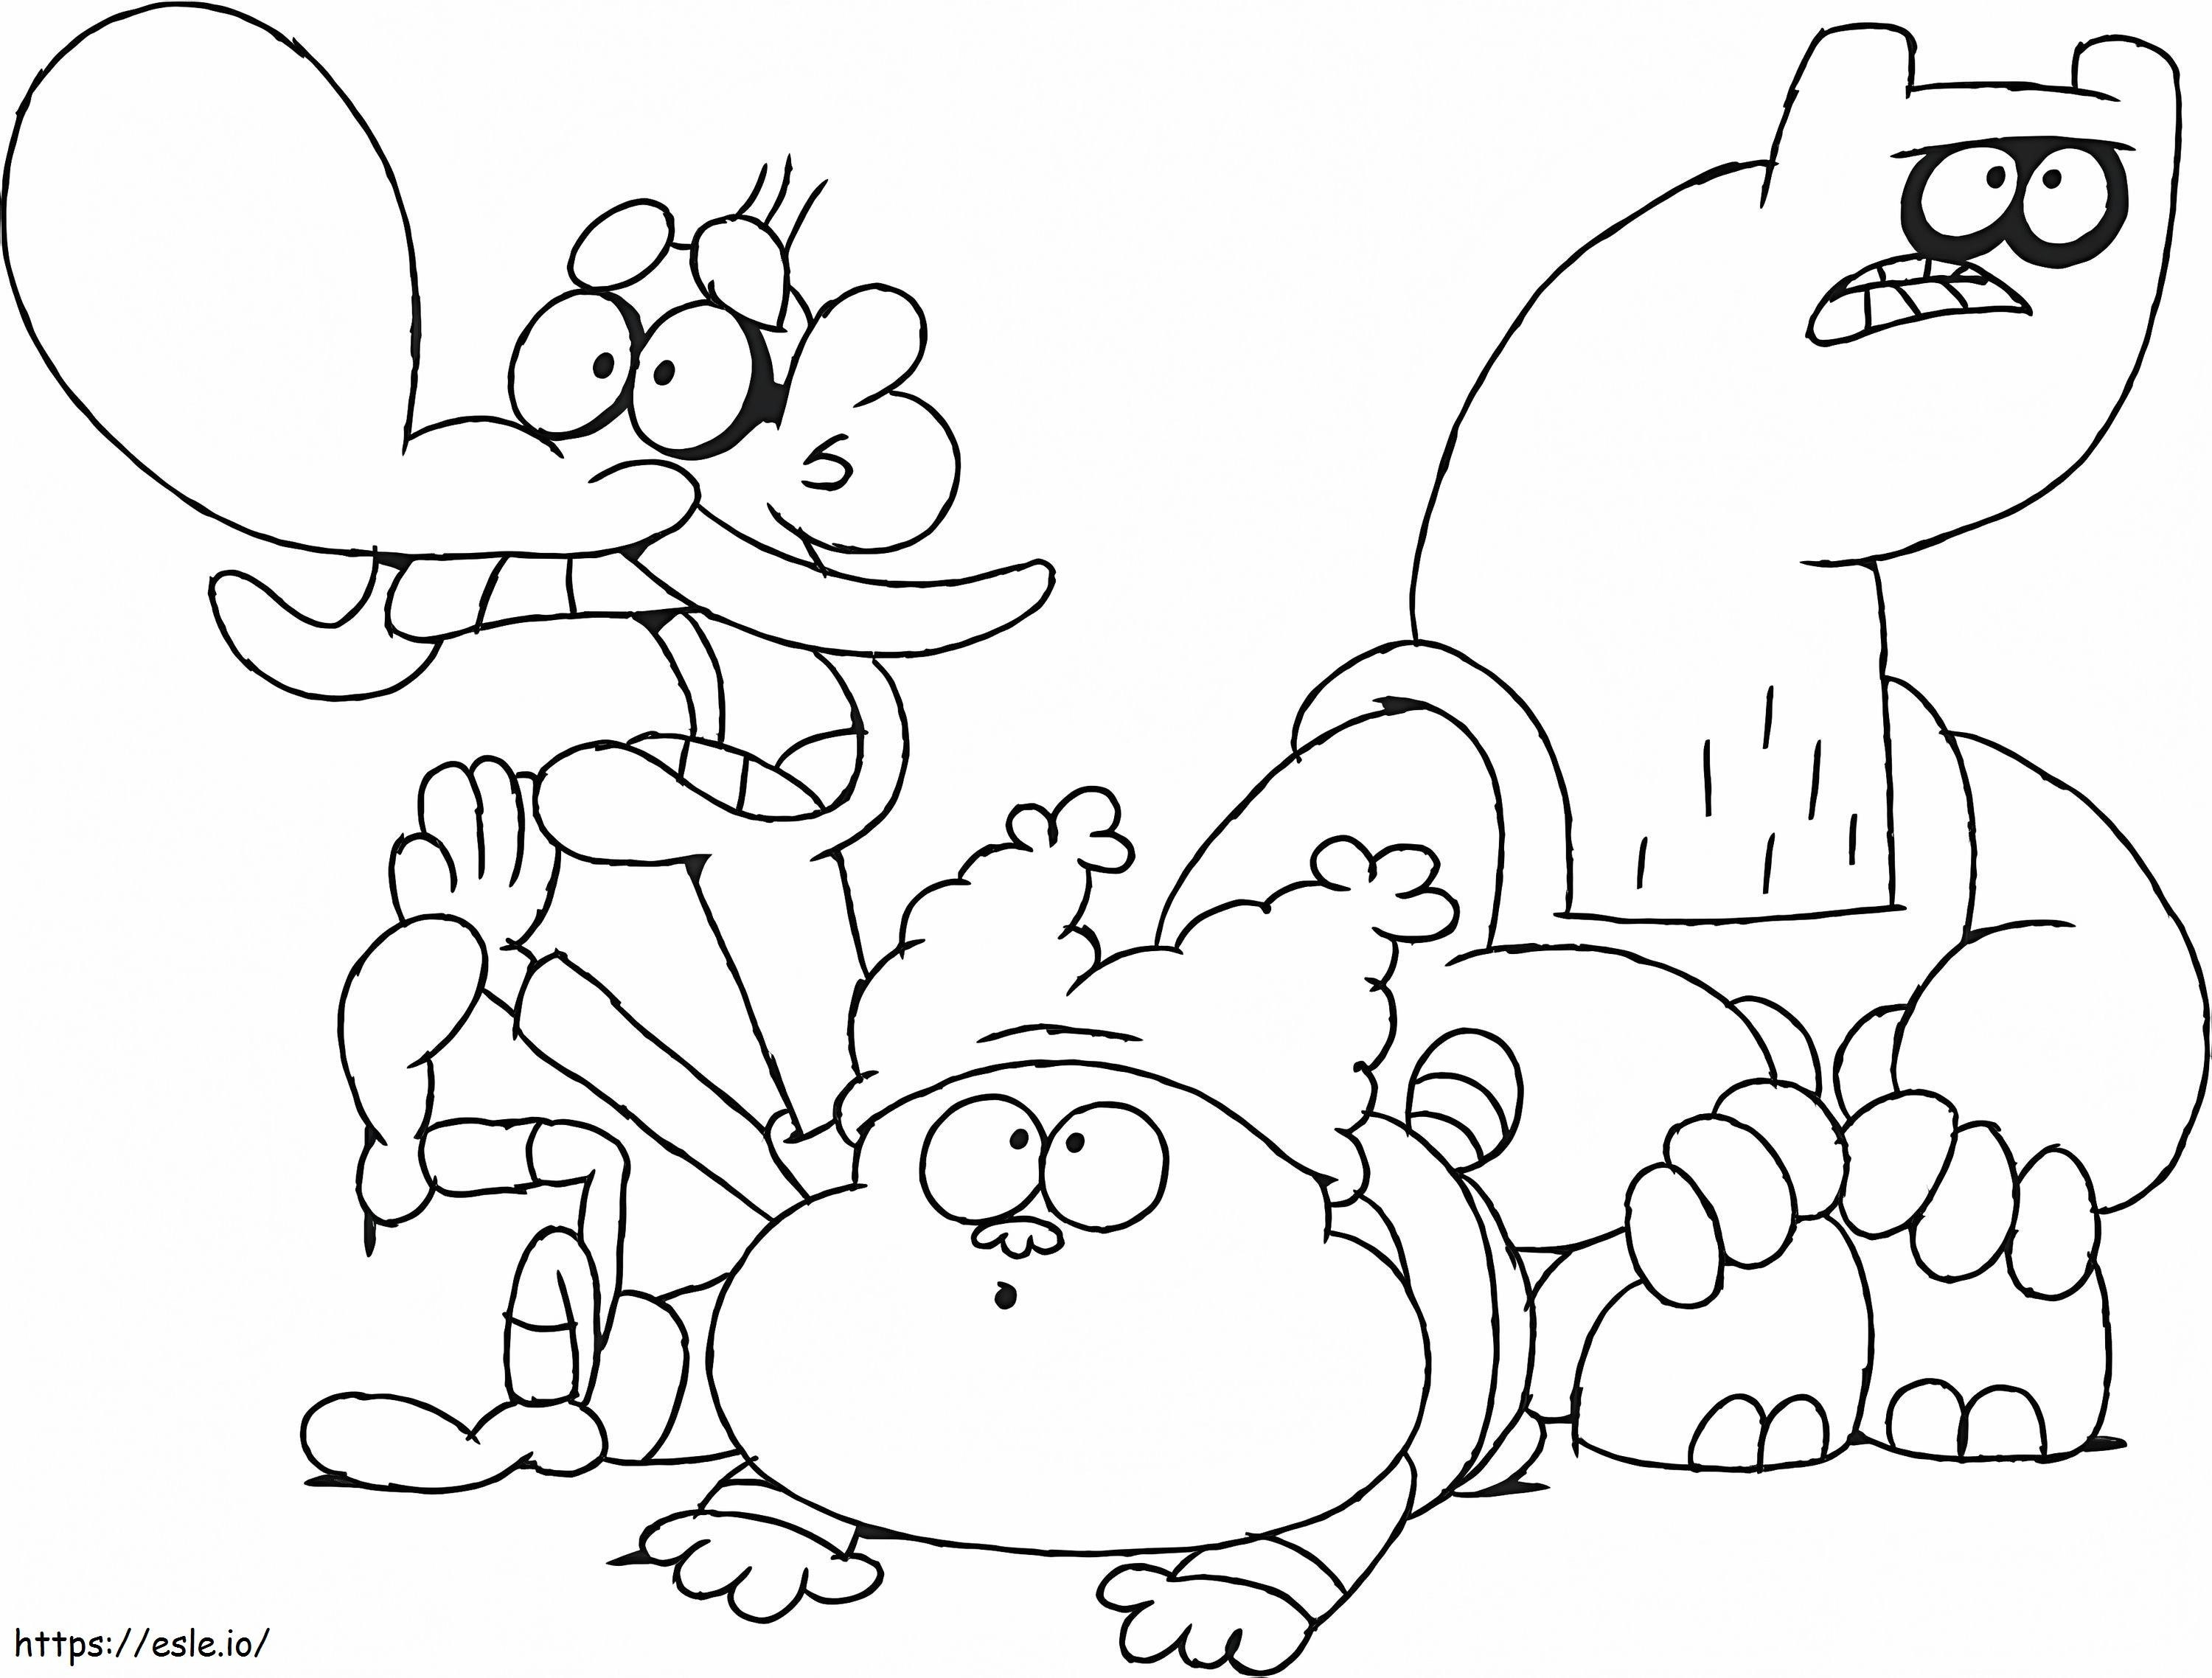 Personagens de Chowder para colorir